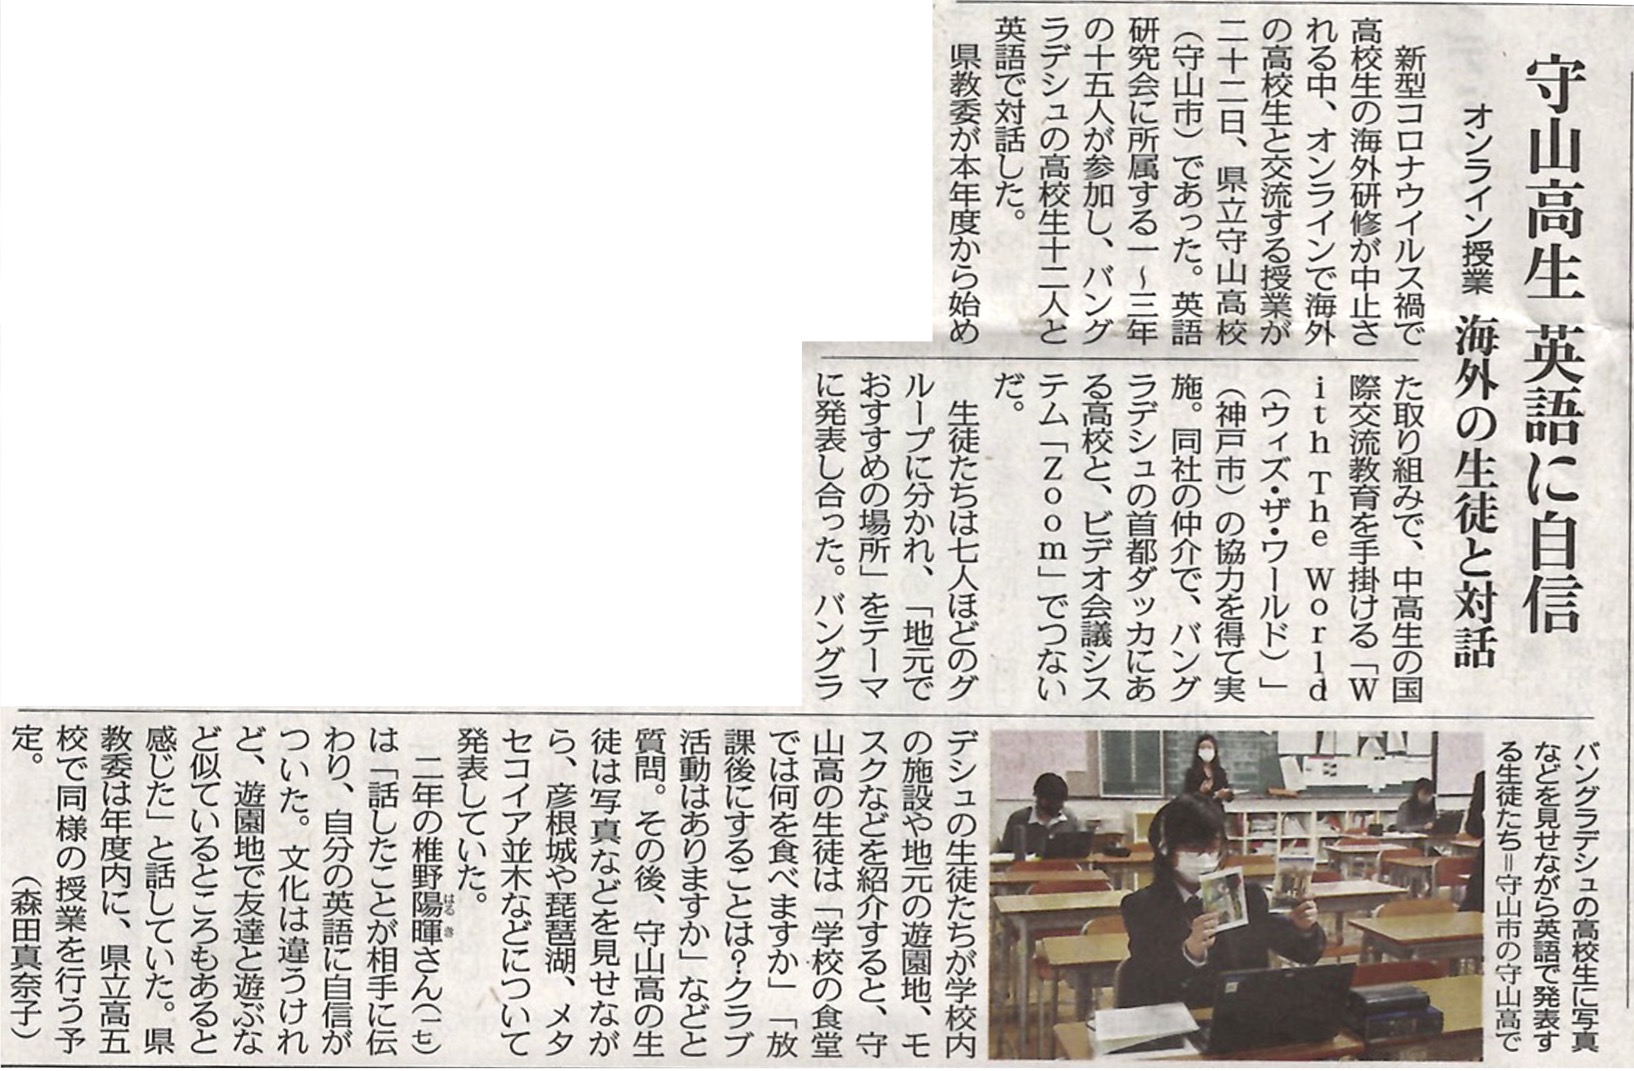 中日新聞に掲載いただきました。「守山高生 英語に自信」